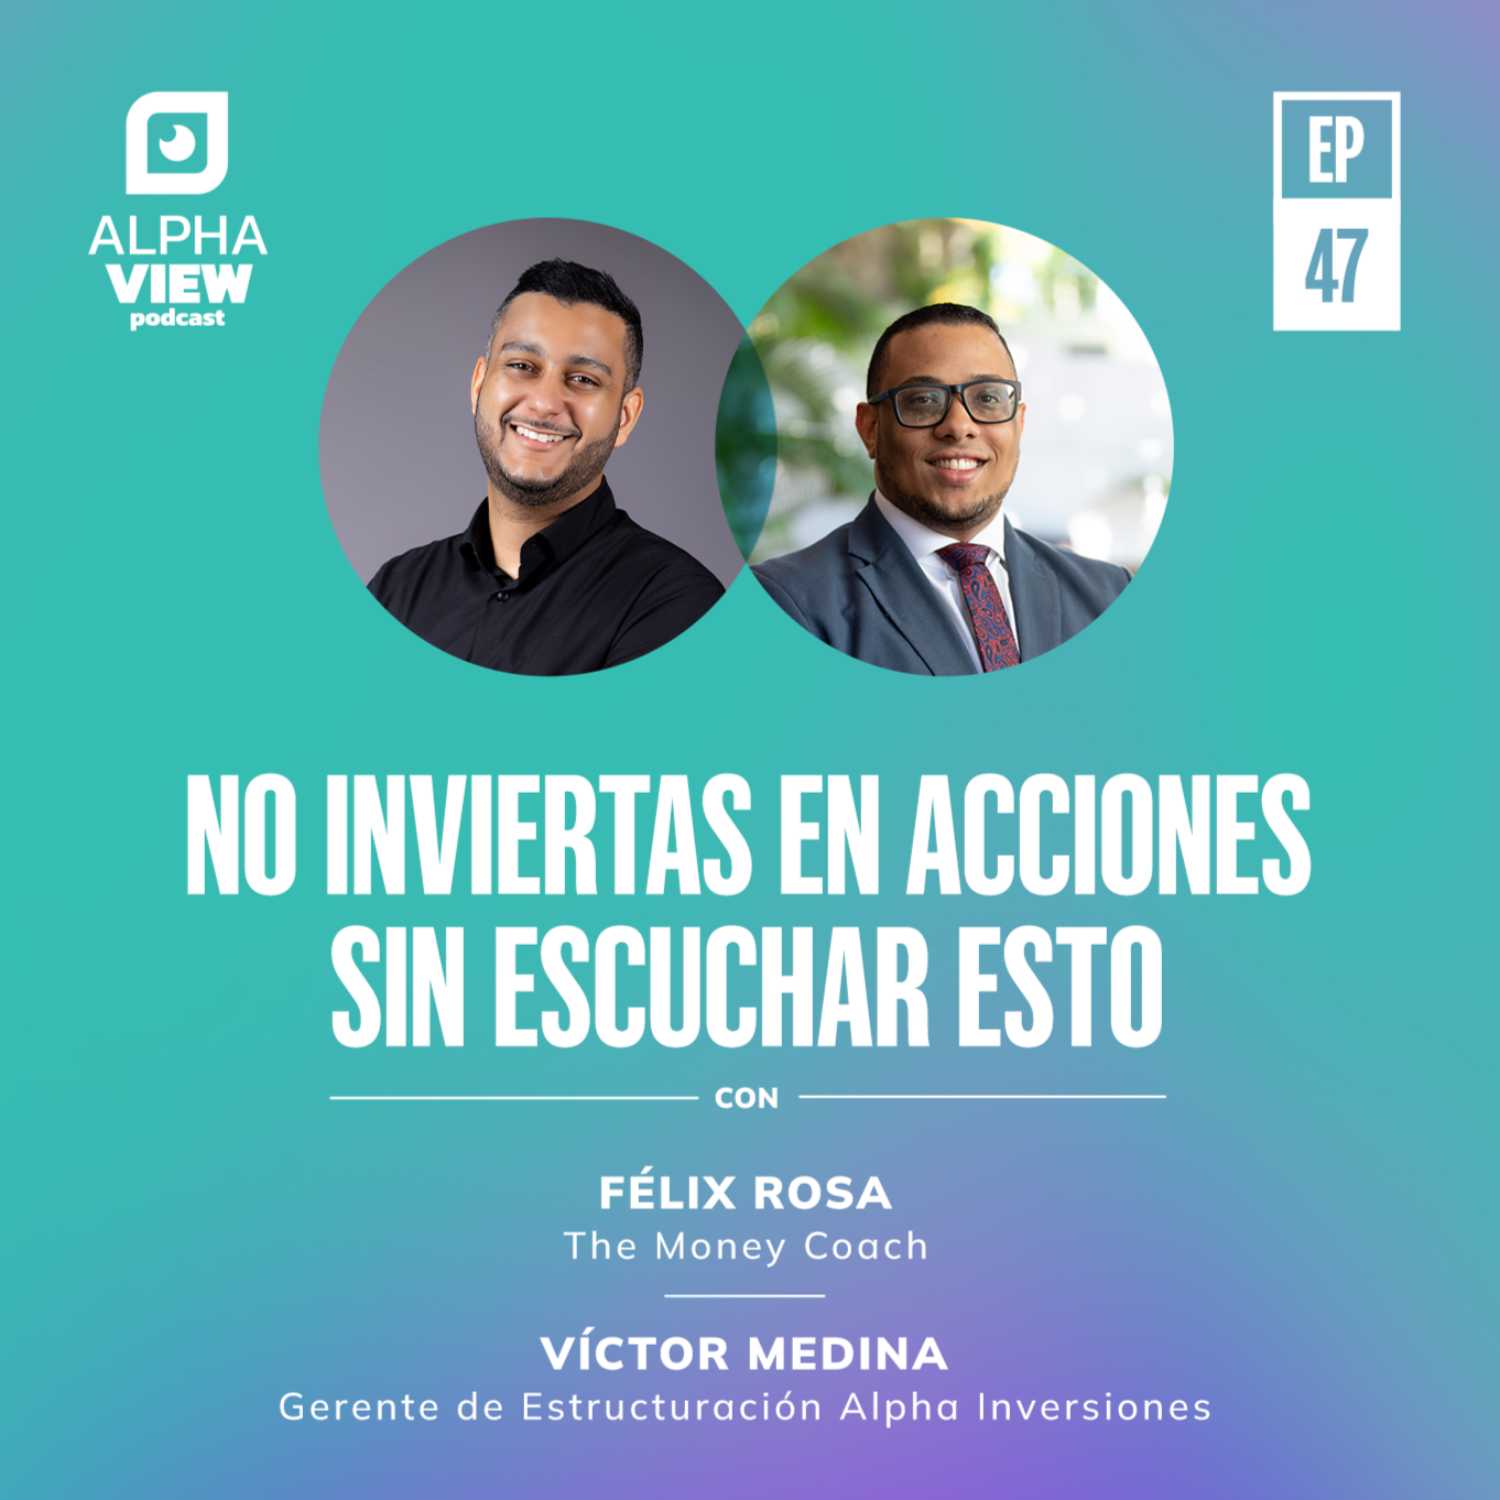 "No inviertas en acciones sin escuchar esto" con The Money Coach y Victor Medina